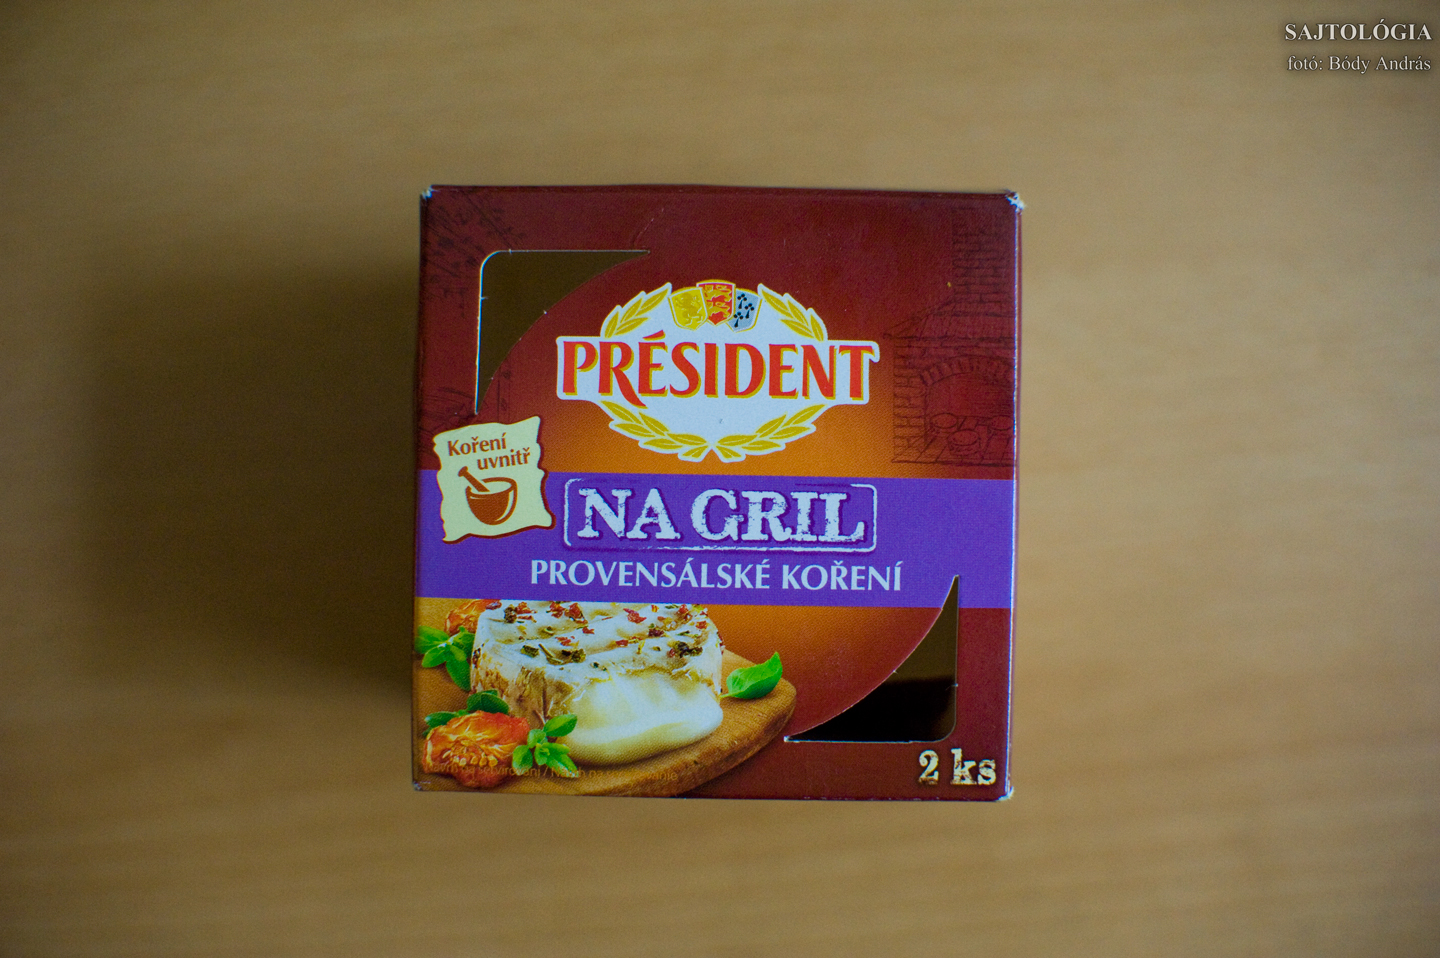 Président na Grill: nem éri meg, akármelyik Camembert-tel elérhető ennek a végeredménye is. Amúgy egy korrekt, finom sajt sületlenül is.